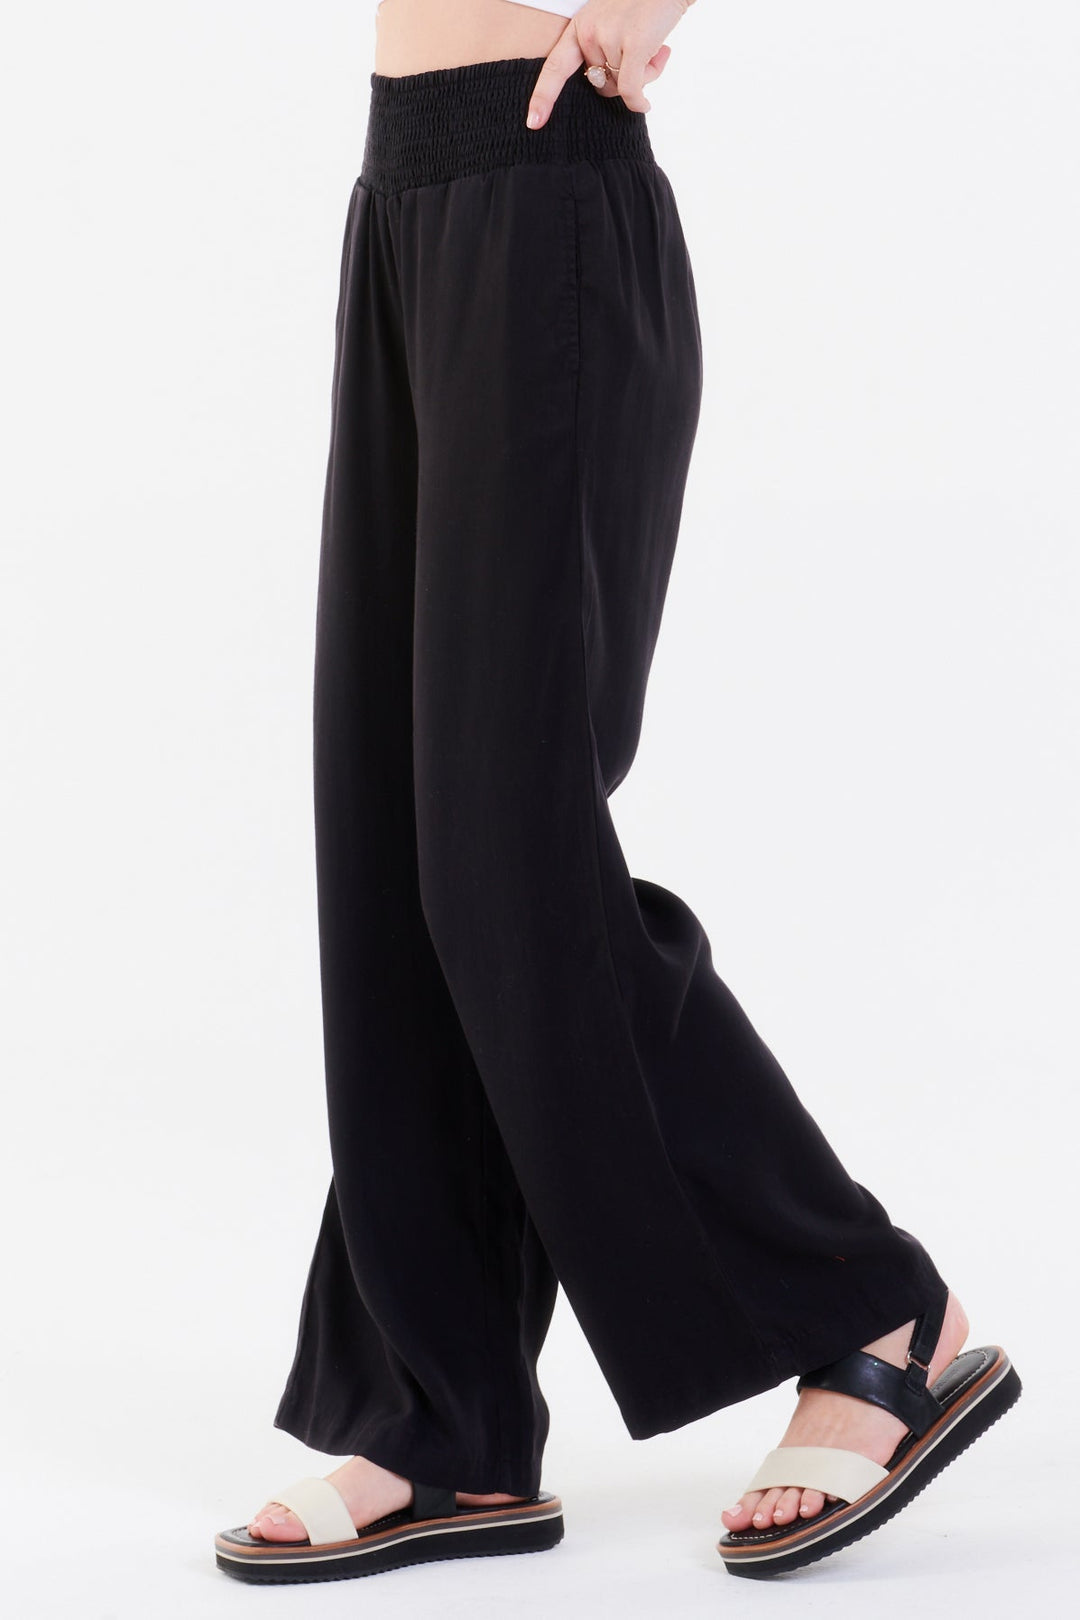 image of a female model wearing a LIZZIE LOUNGE PANTS BLACK DEAR JOHN DENIM 